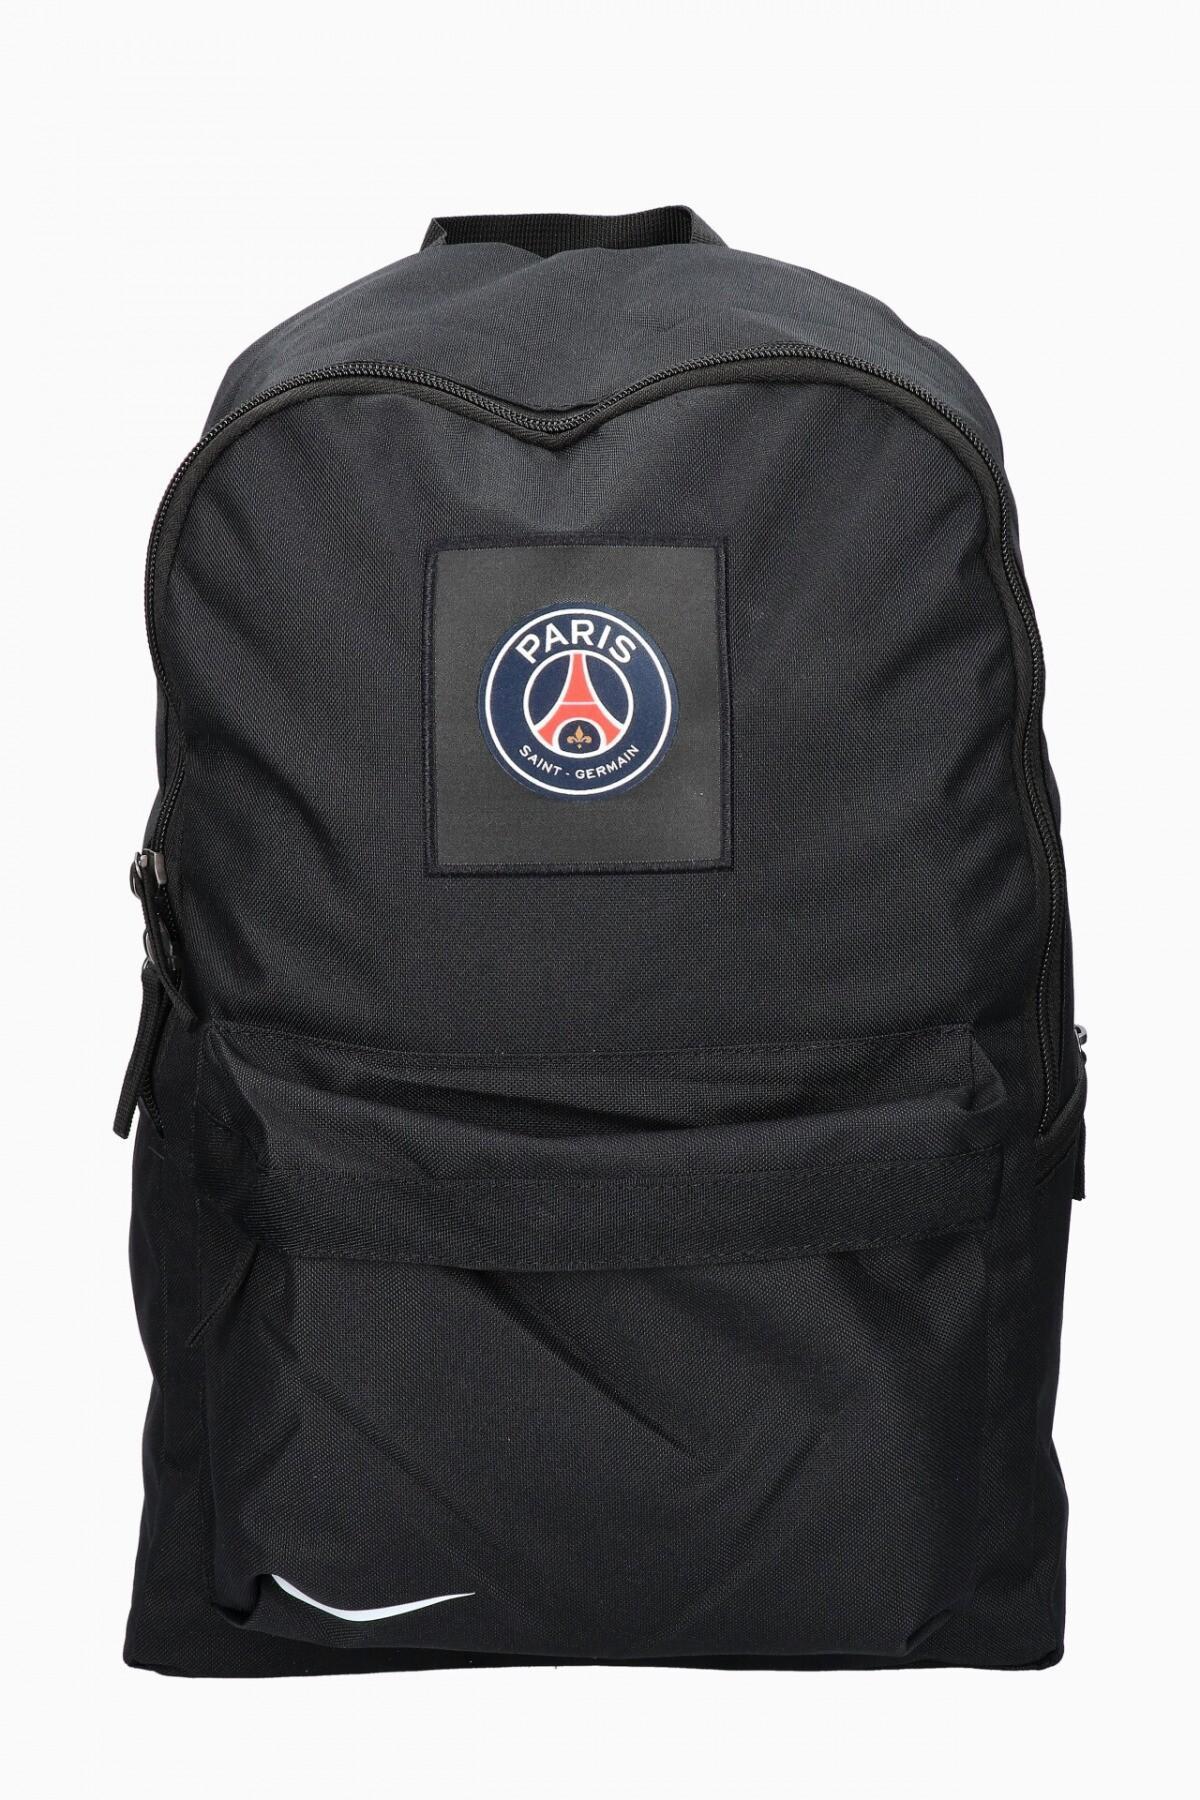 Backpack paris saint-germain 2021/22